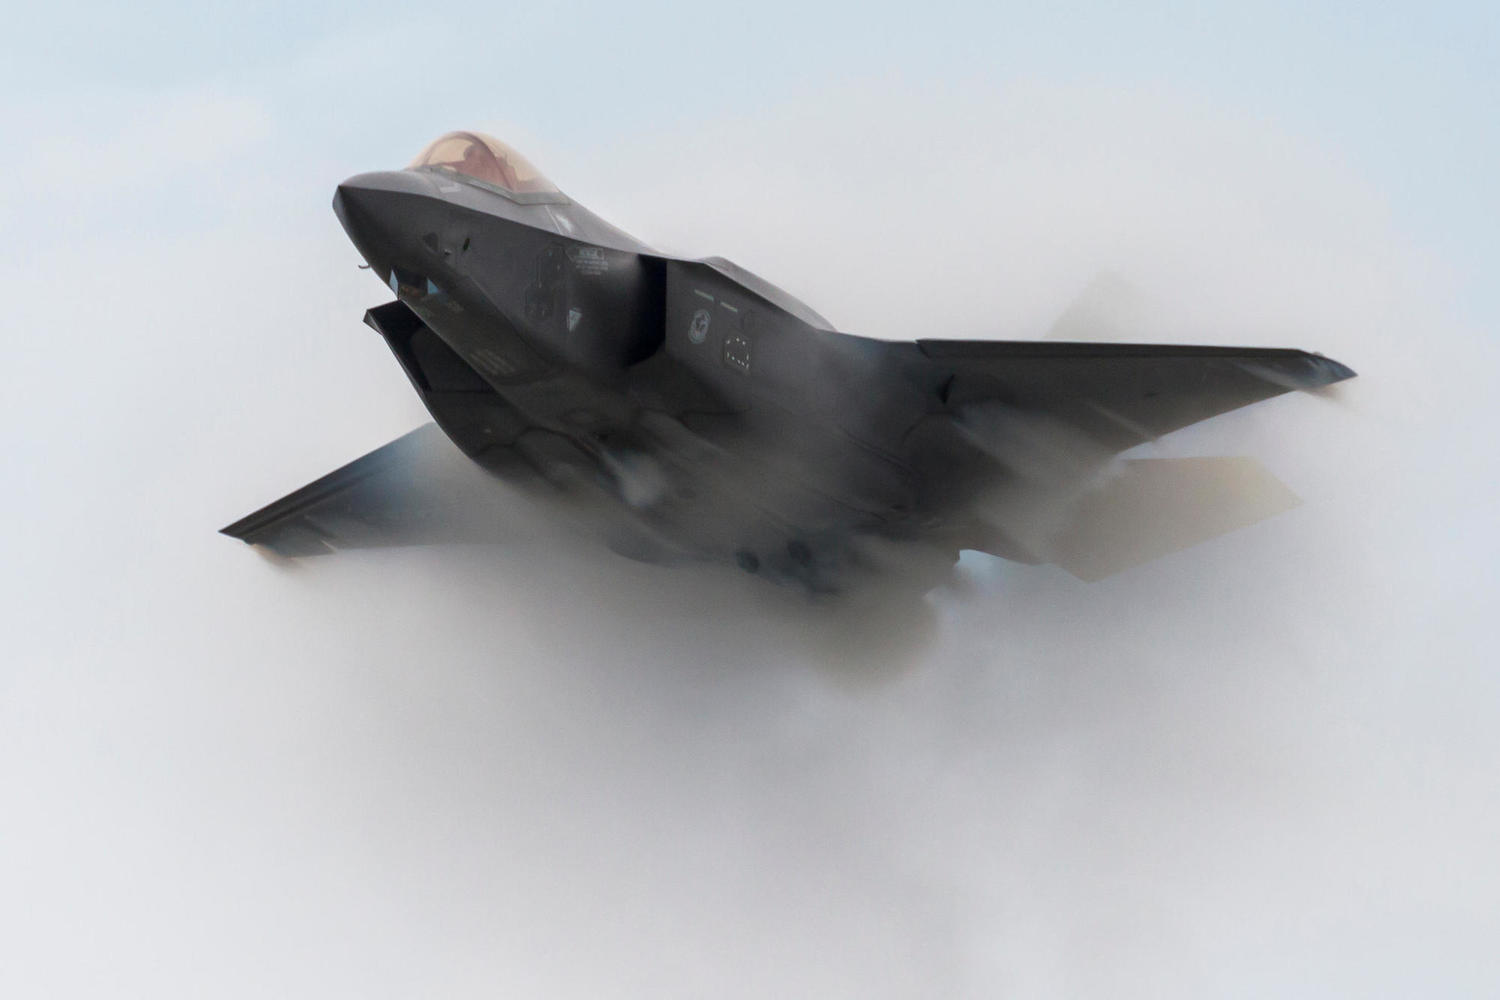 Утвержден план закупок министерства обороны: эскадрилья F-35 и другие дорогие покупки